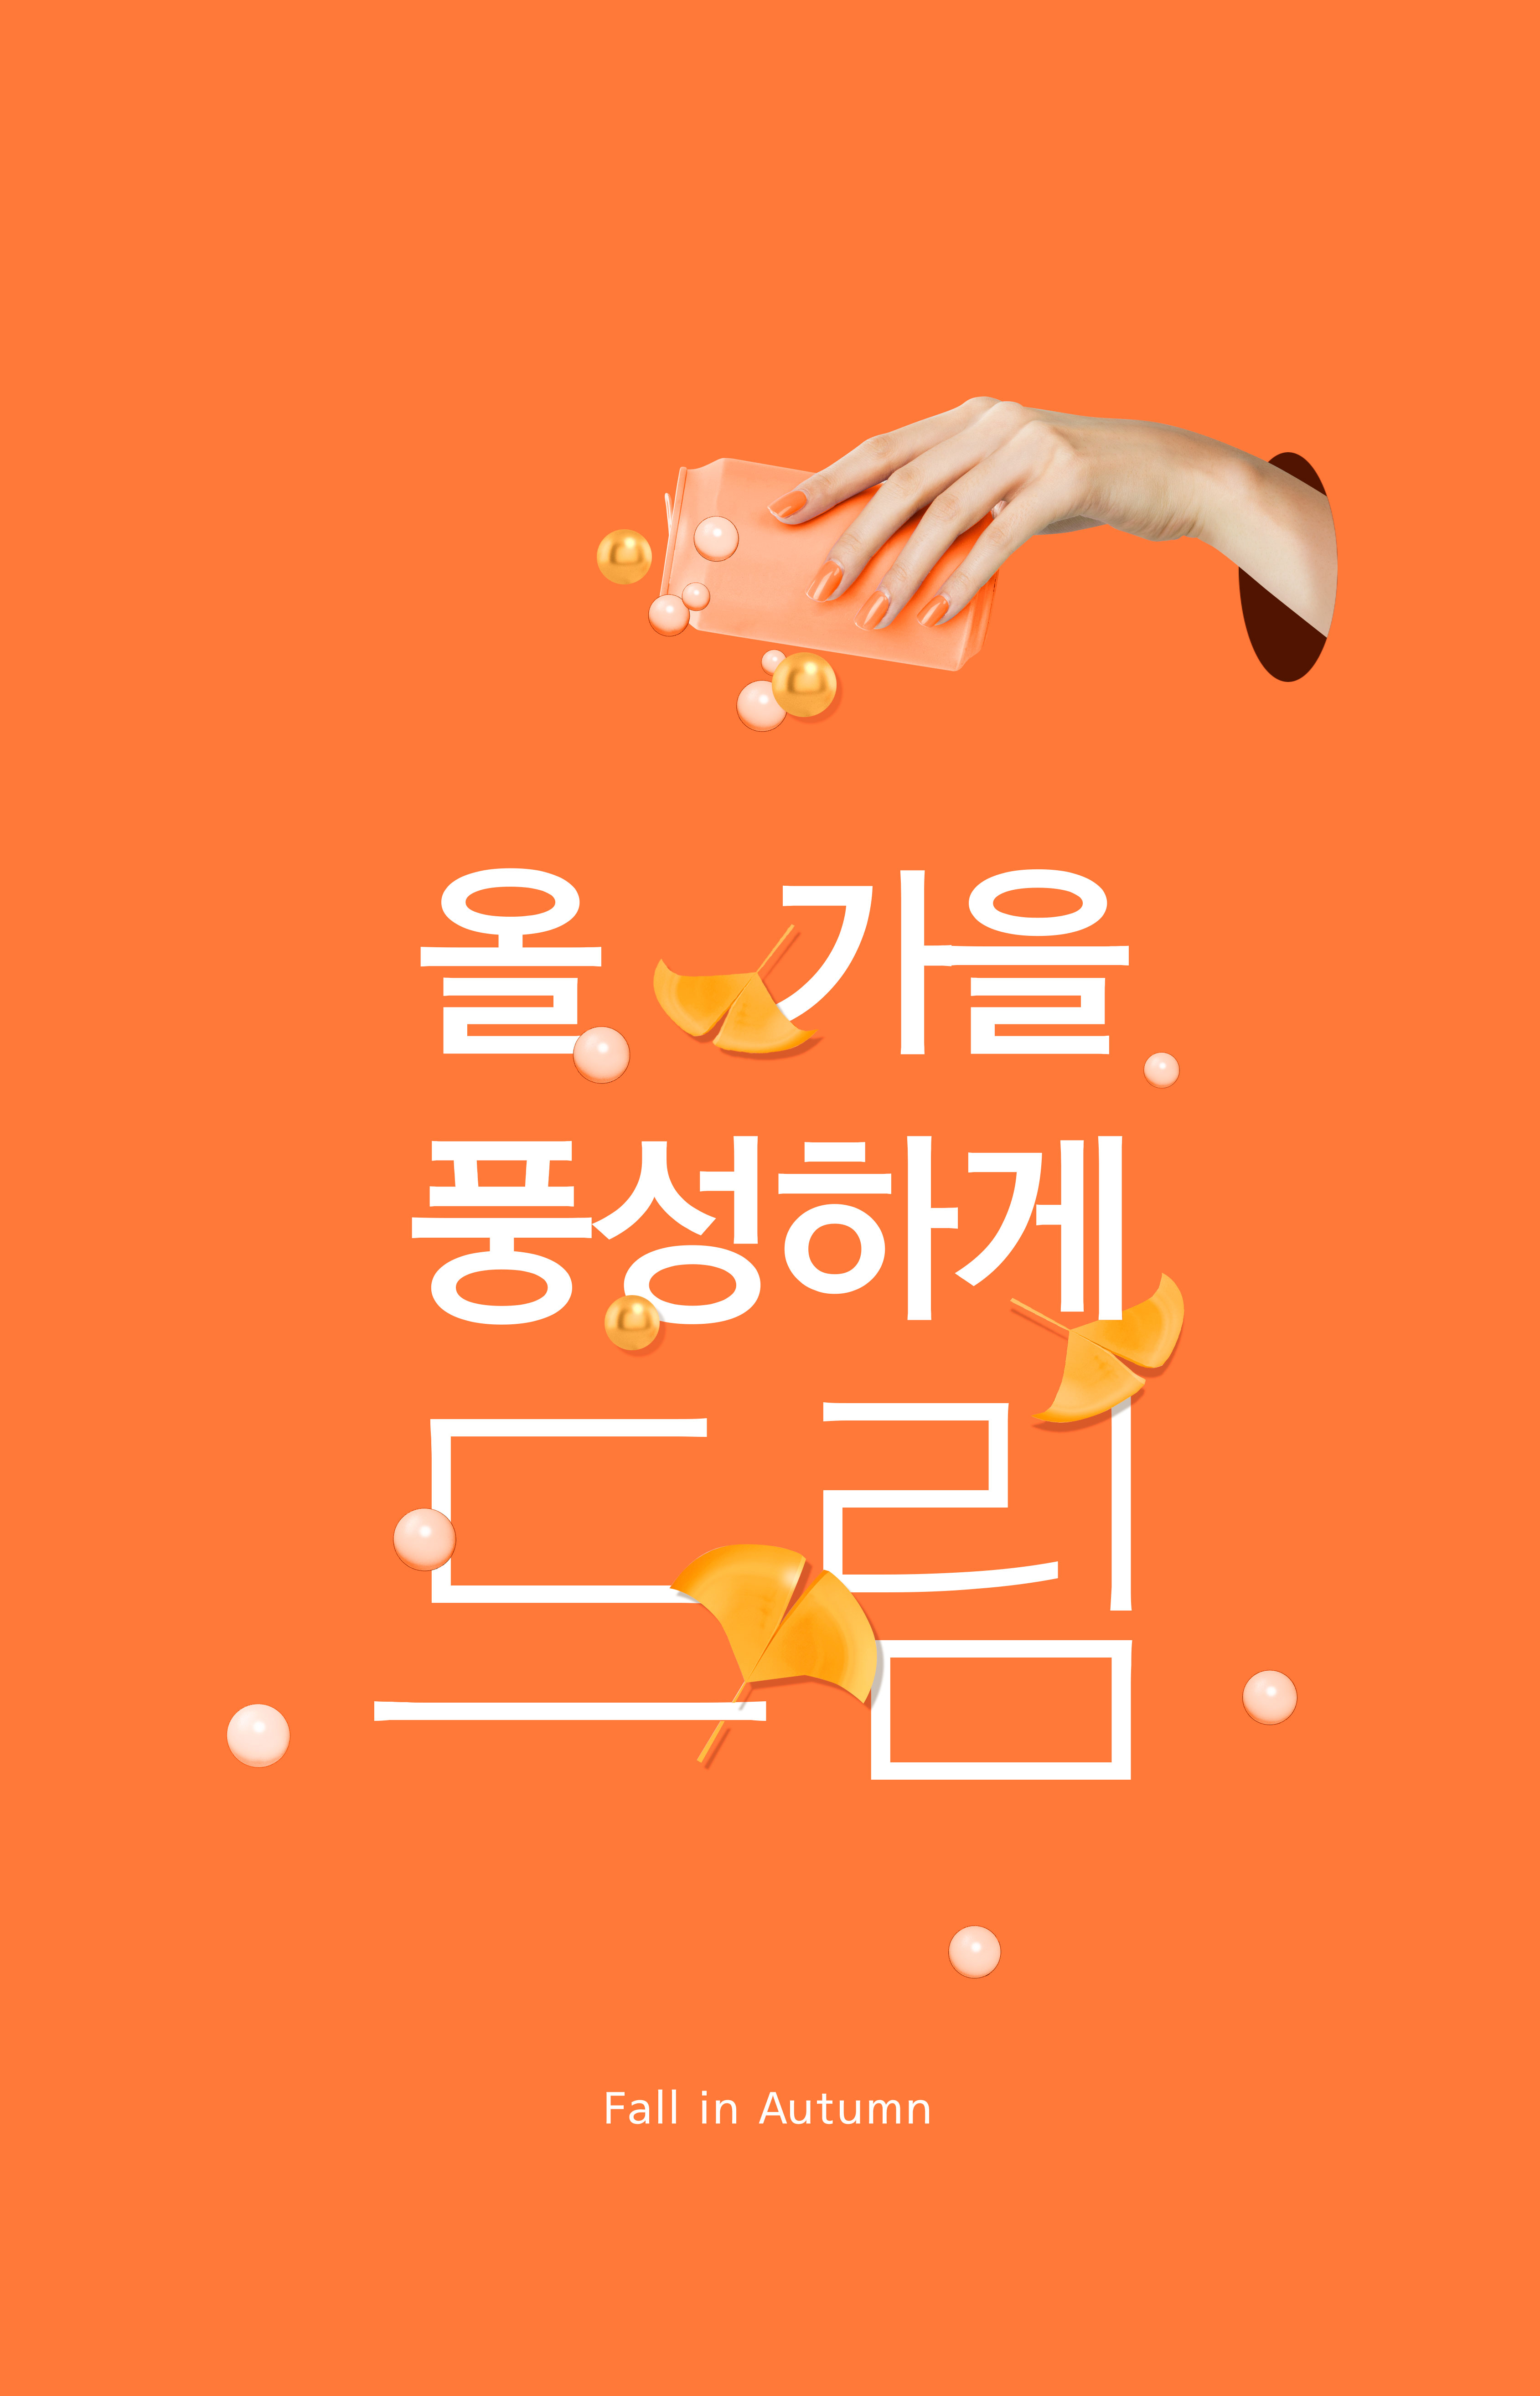 橙色秋季主题多用途海报psd素材插图